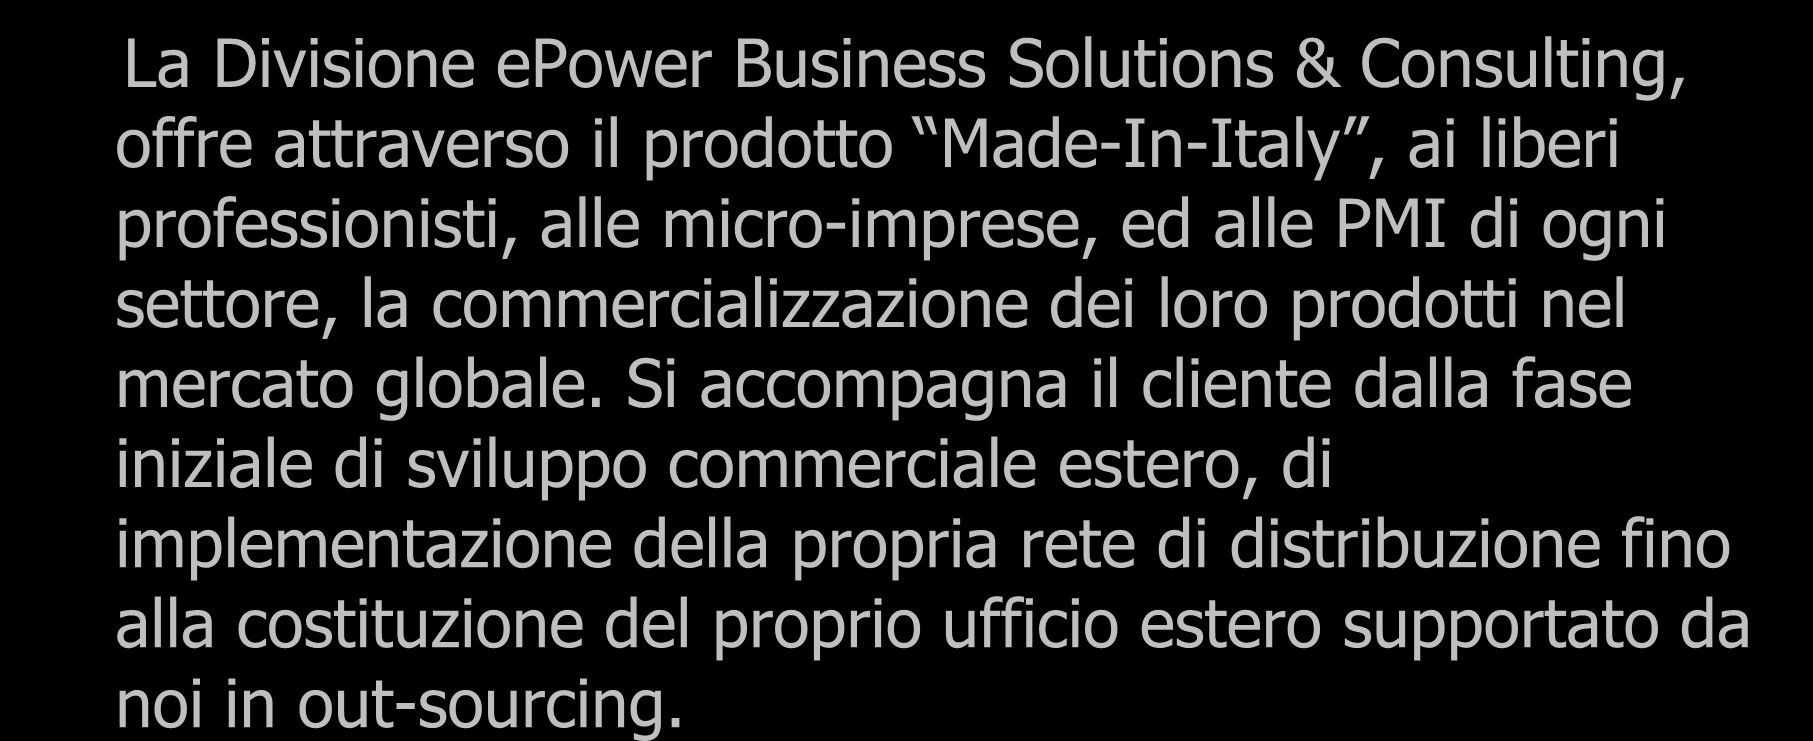 Sviluppo Business Mercato Globale La Divisione epower Business Solutions & Consulting, offre attraverso il prodotto Made-In-Italy, ai liberi professionisti, alle micro-imprese, ed alle PMI di ogni